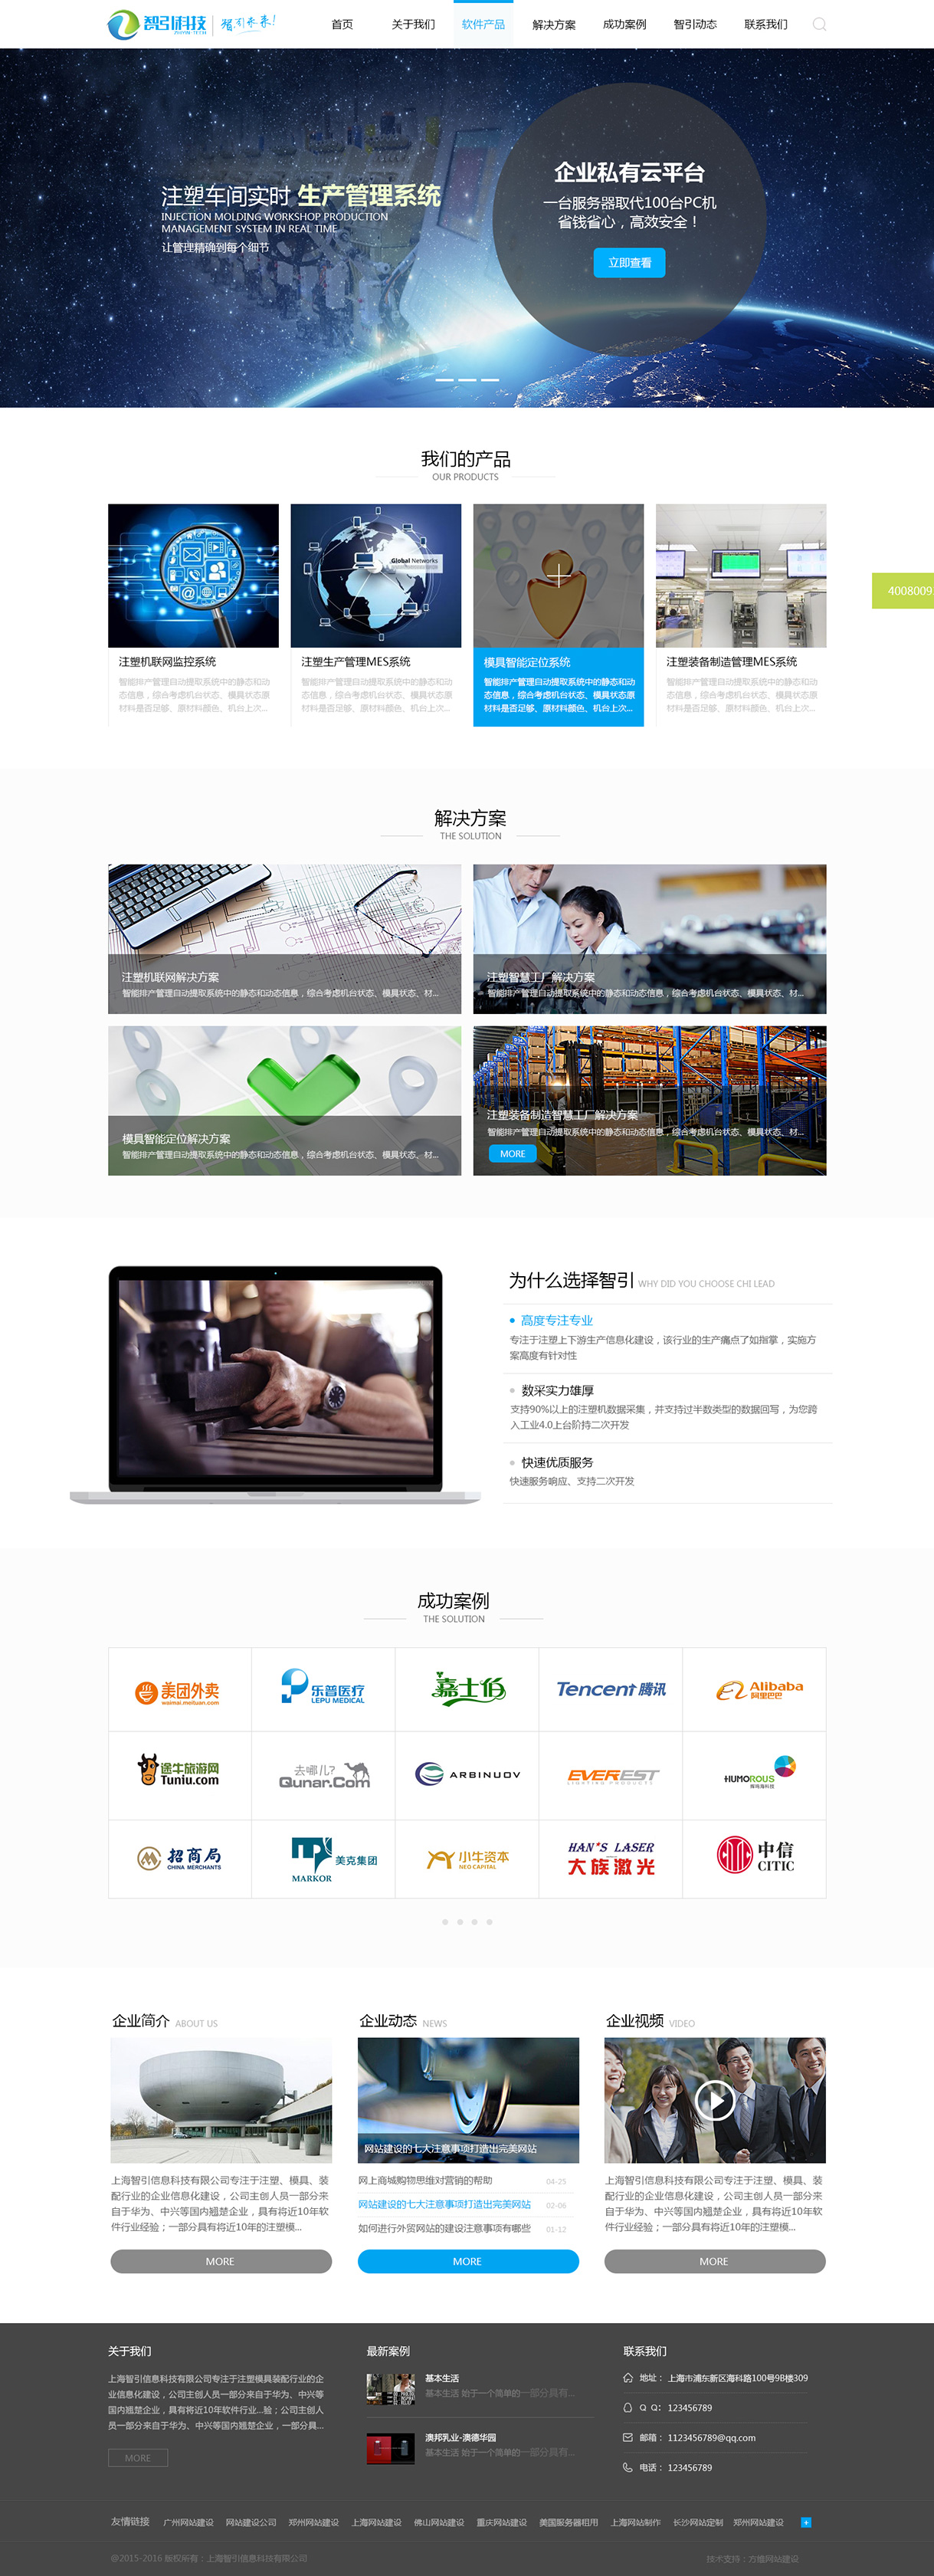 上海智引信息科技有限公司网站案例